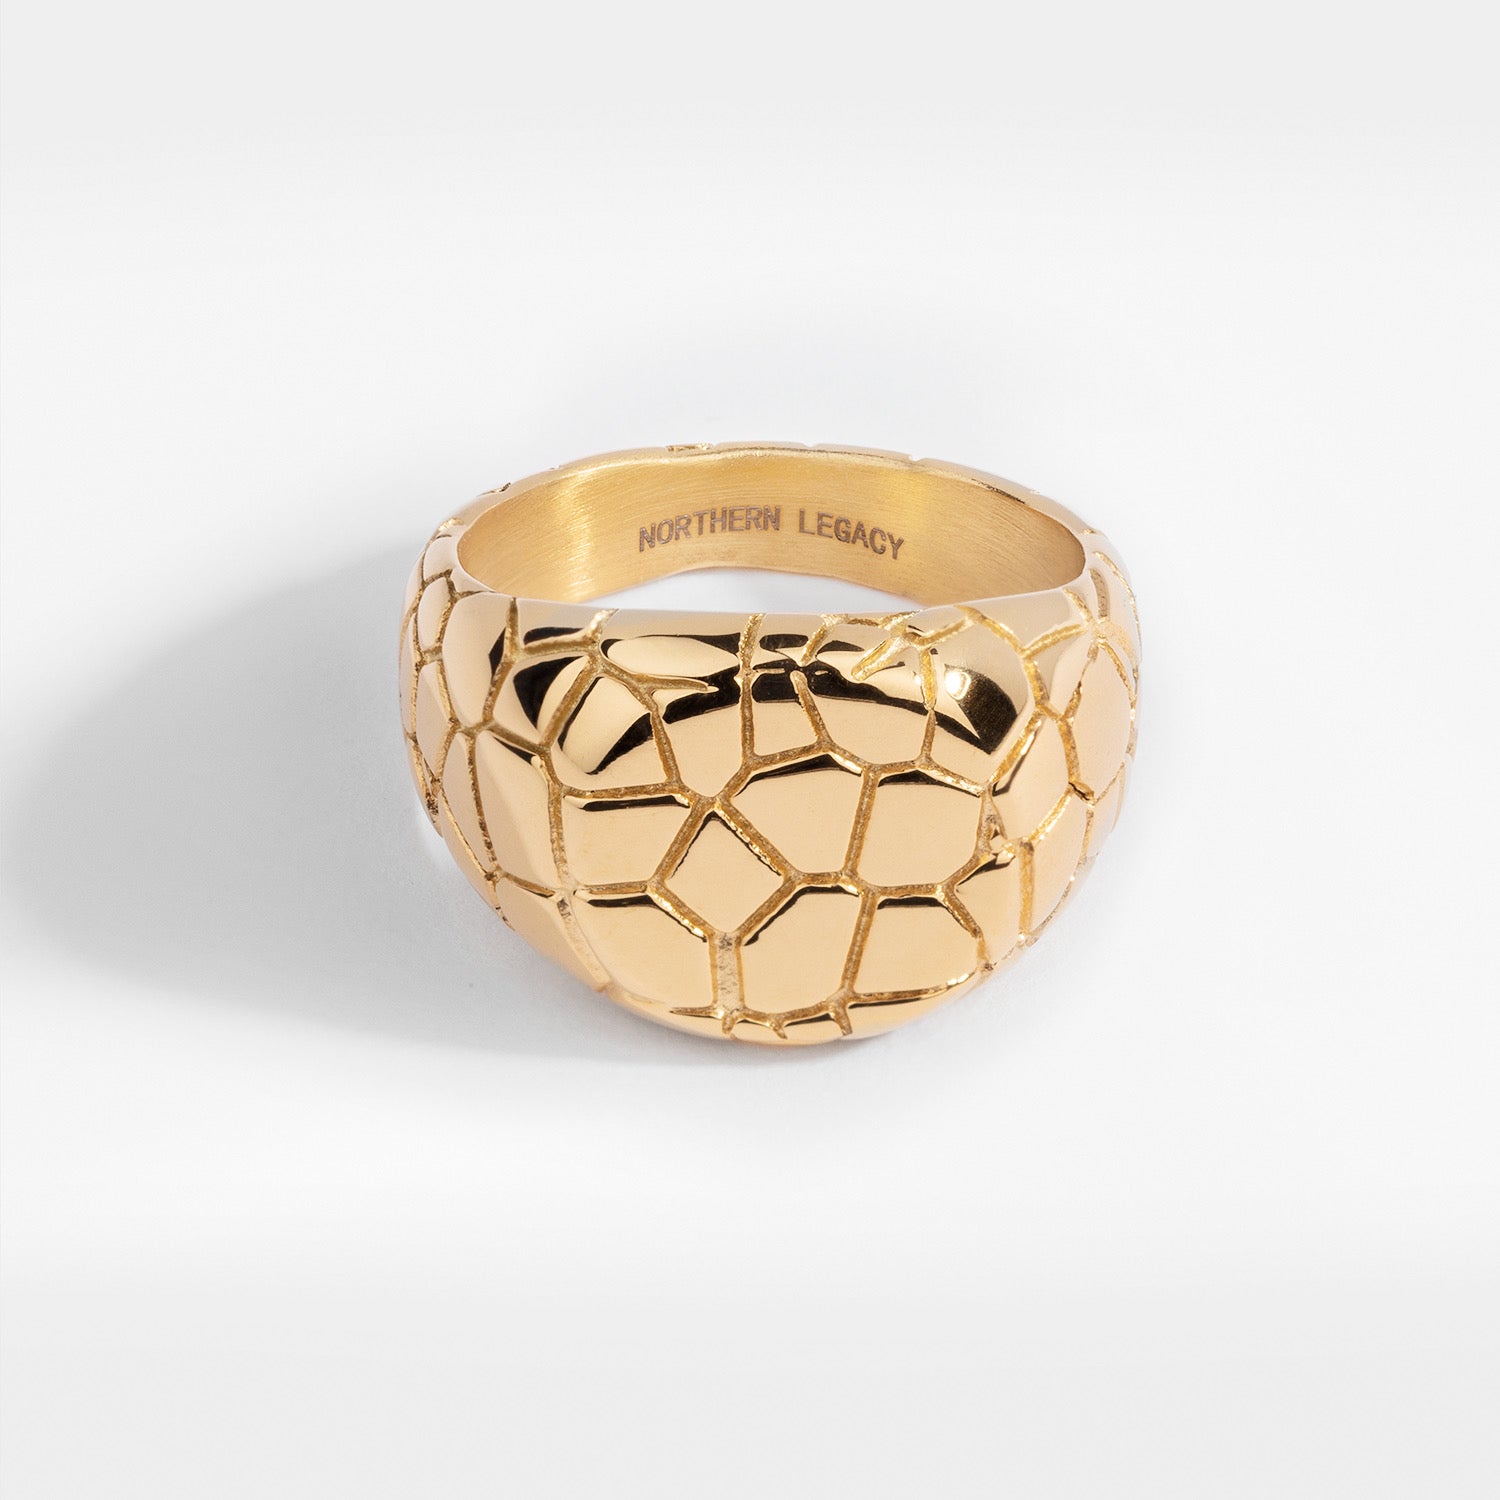 Earthquake Signature - Gold-toned ring